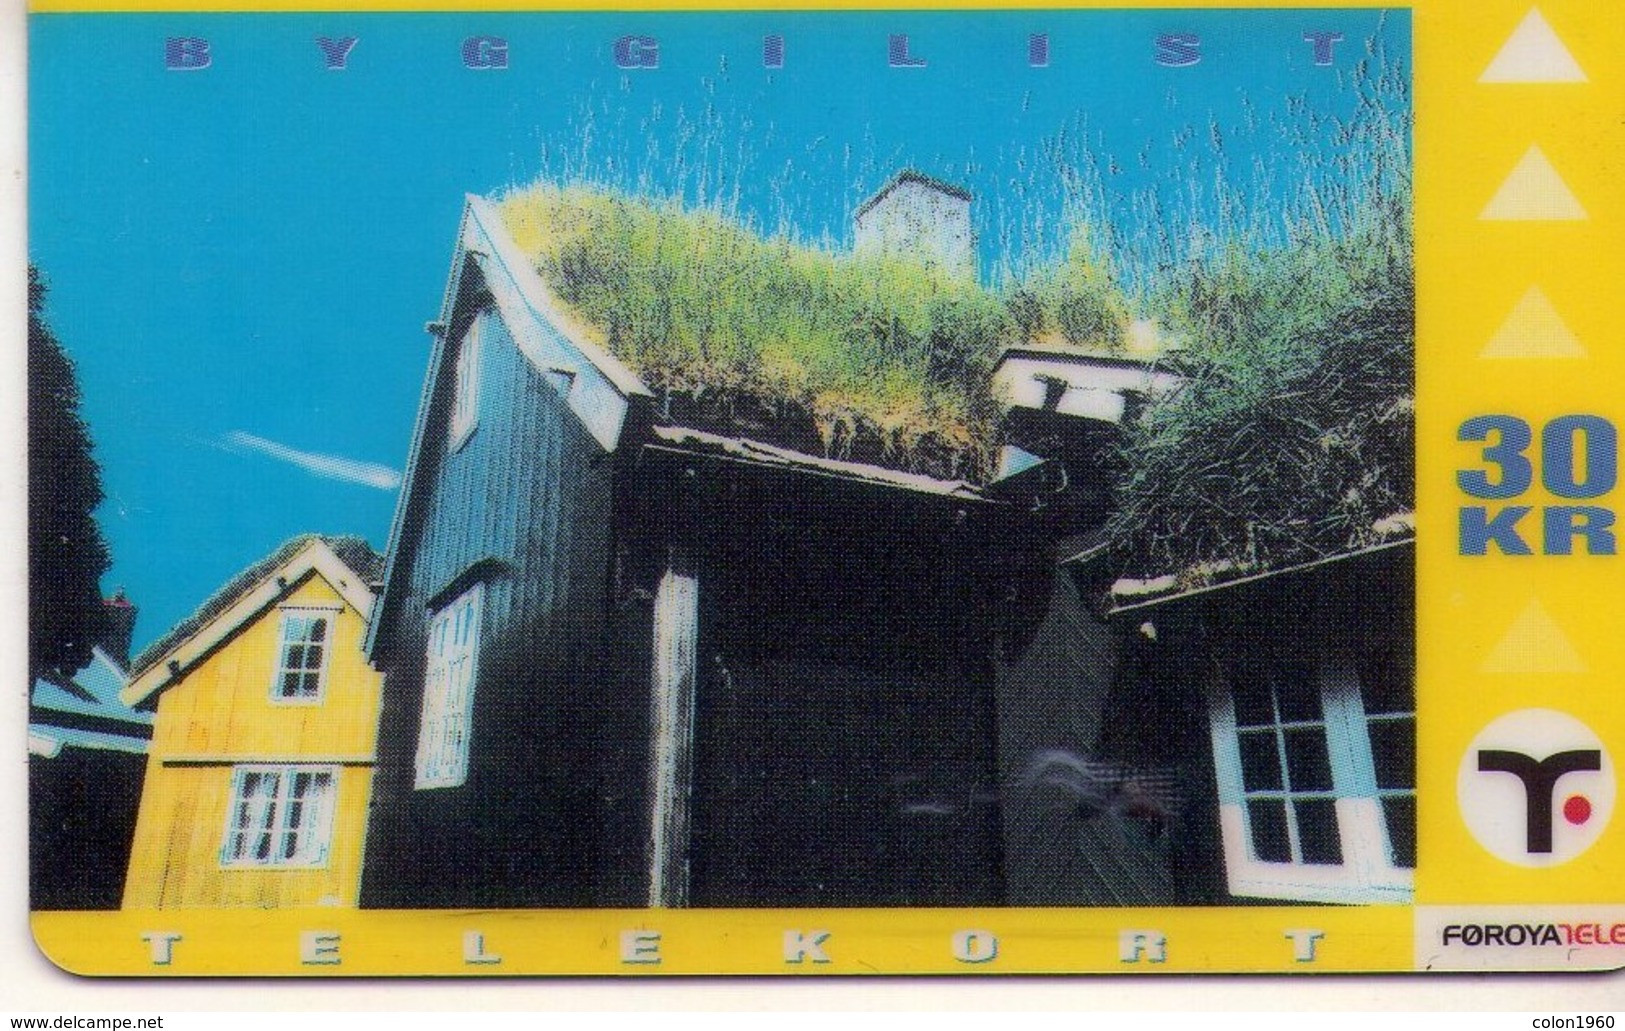 ISLAS FEROE. FO-FOT-0020. (architecture). 1998-09. 14050 Ex. (013). REGULAR. - Faroe Islands